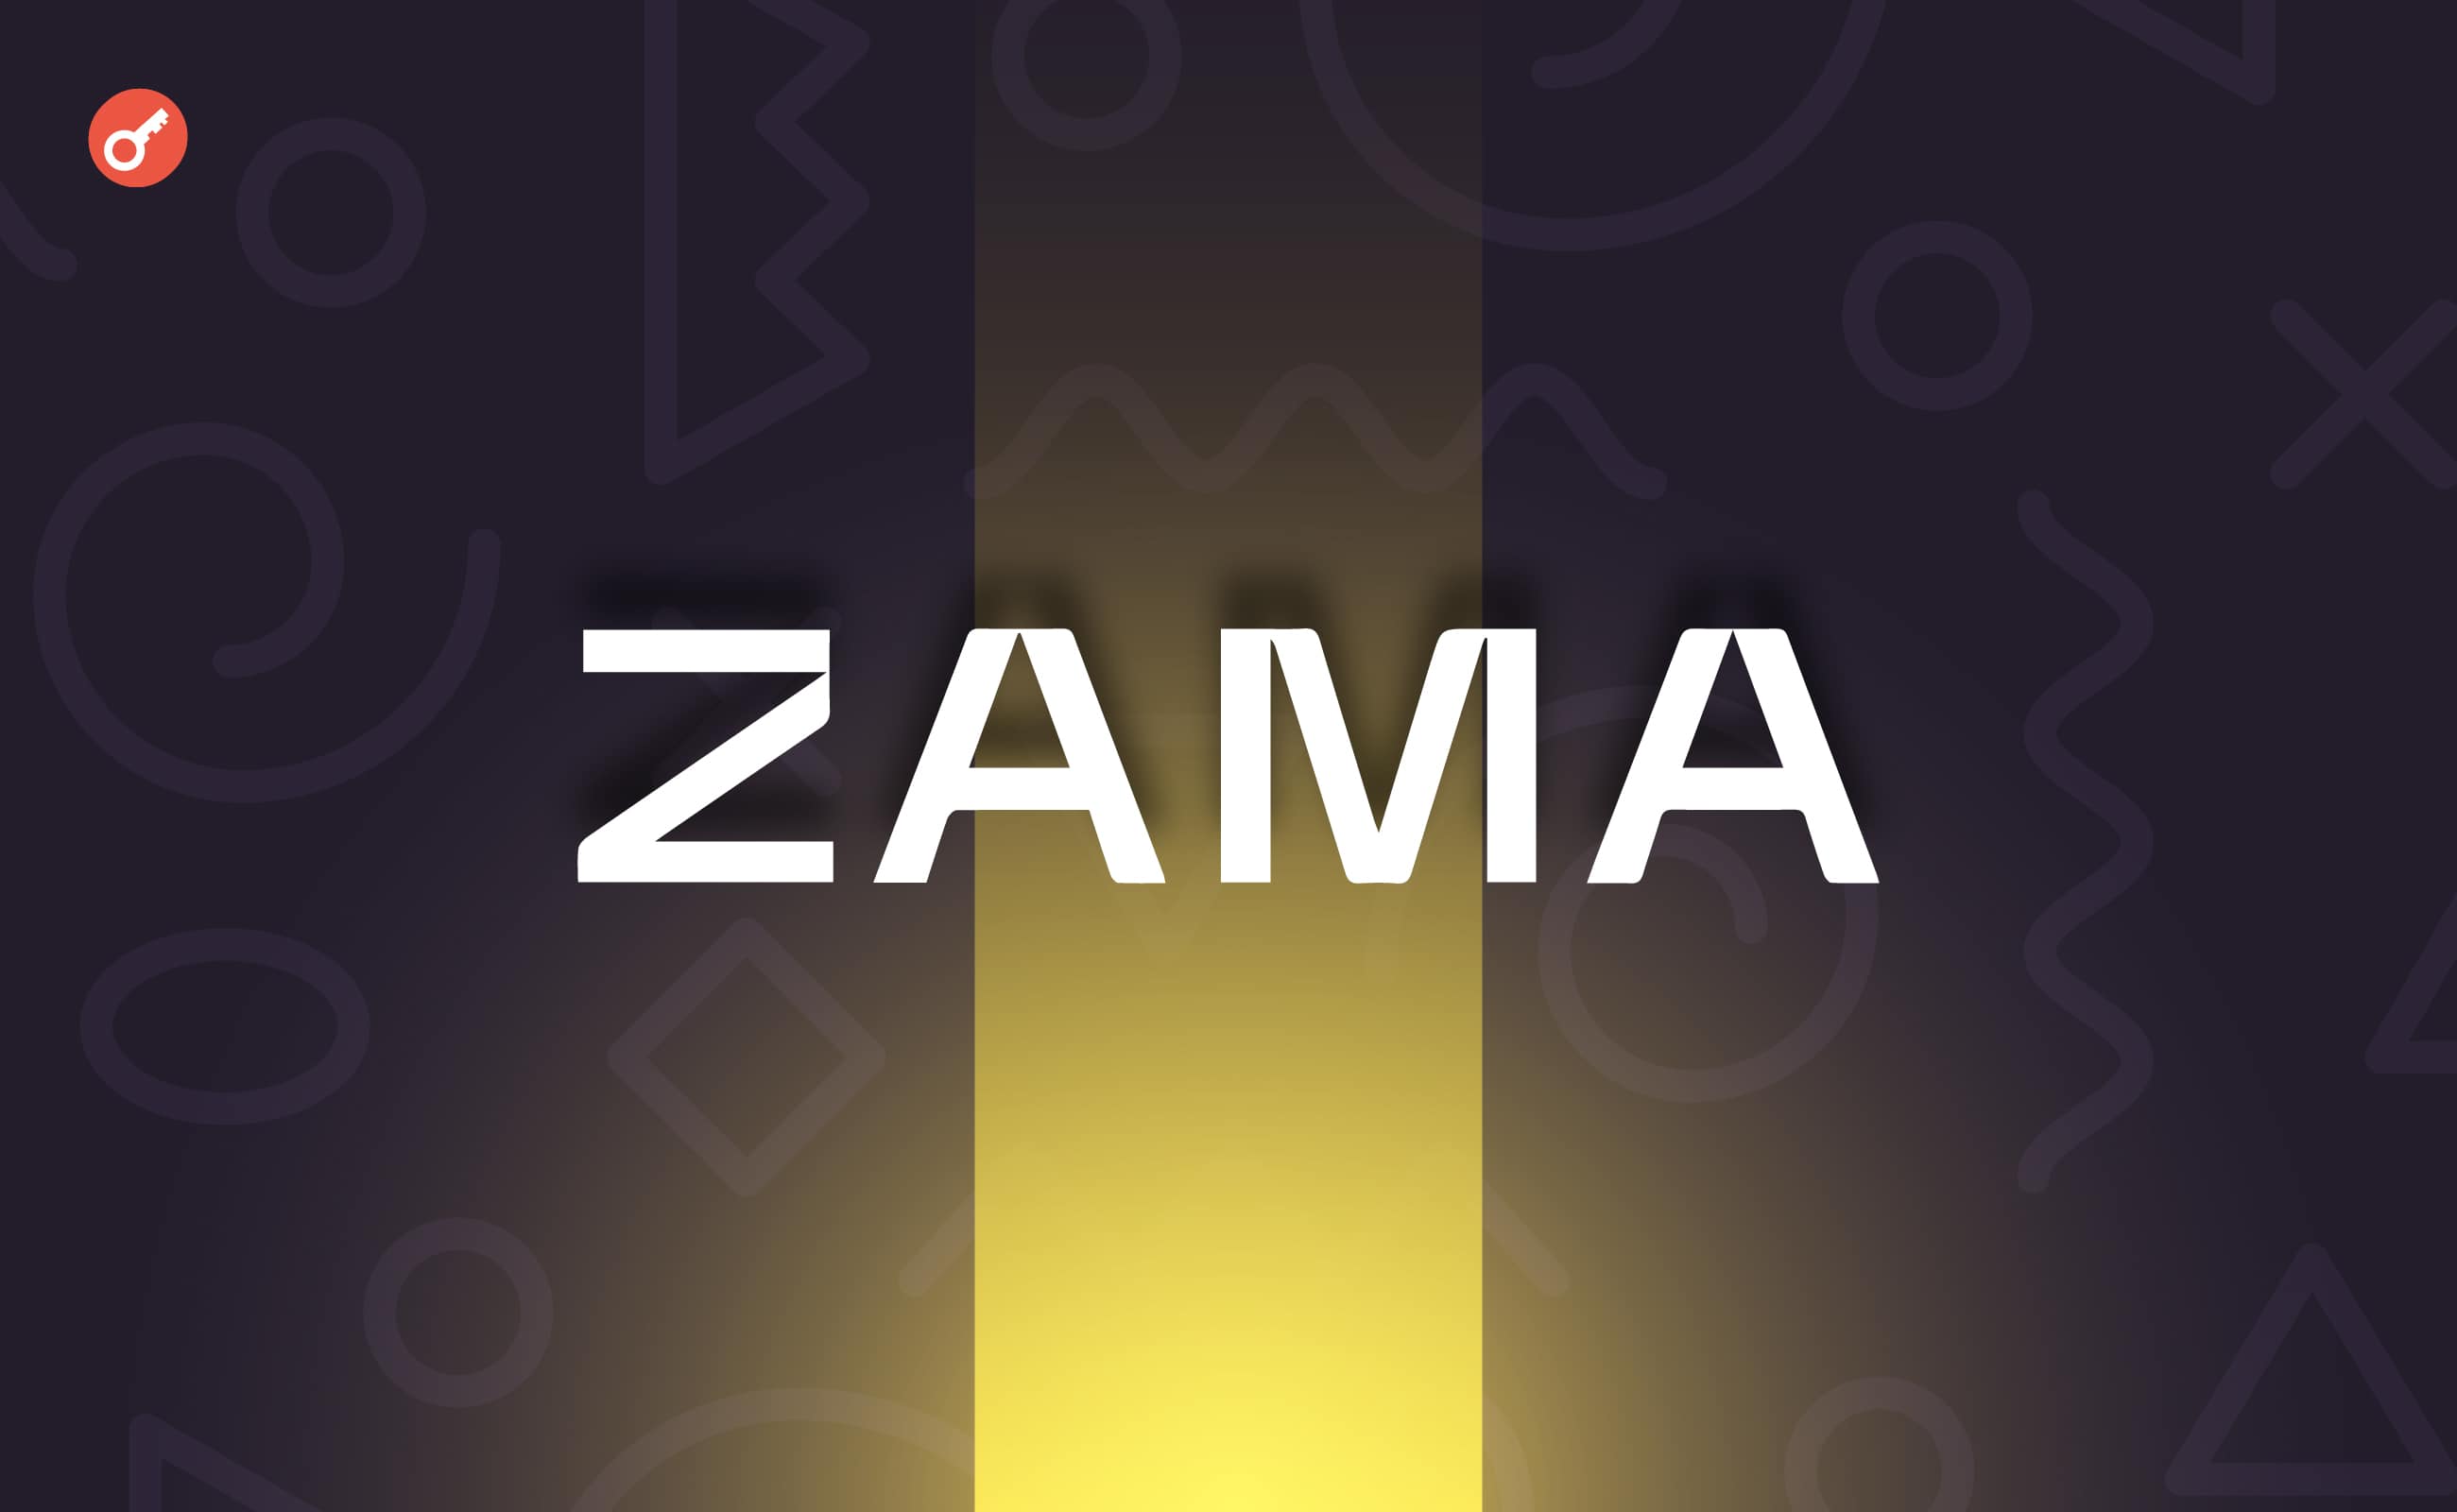 Стартап Zama залучив $73 млн інвестицій. Головний колаж новини.